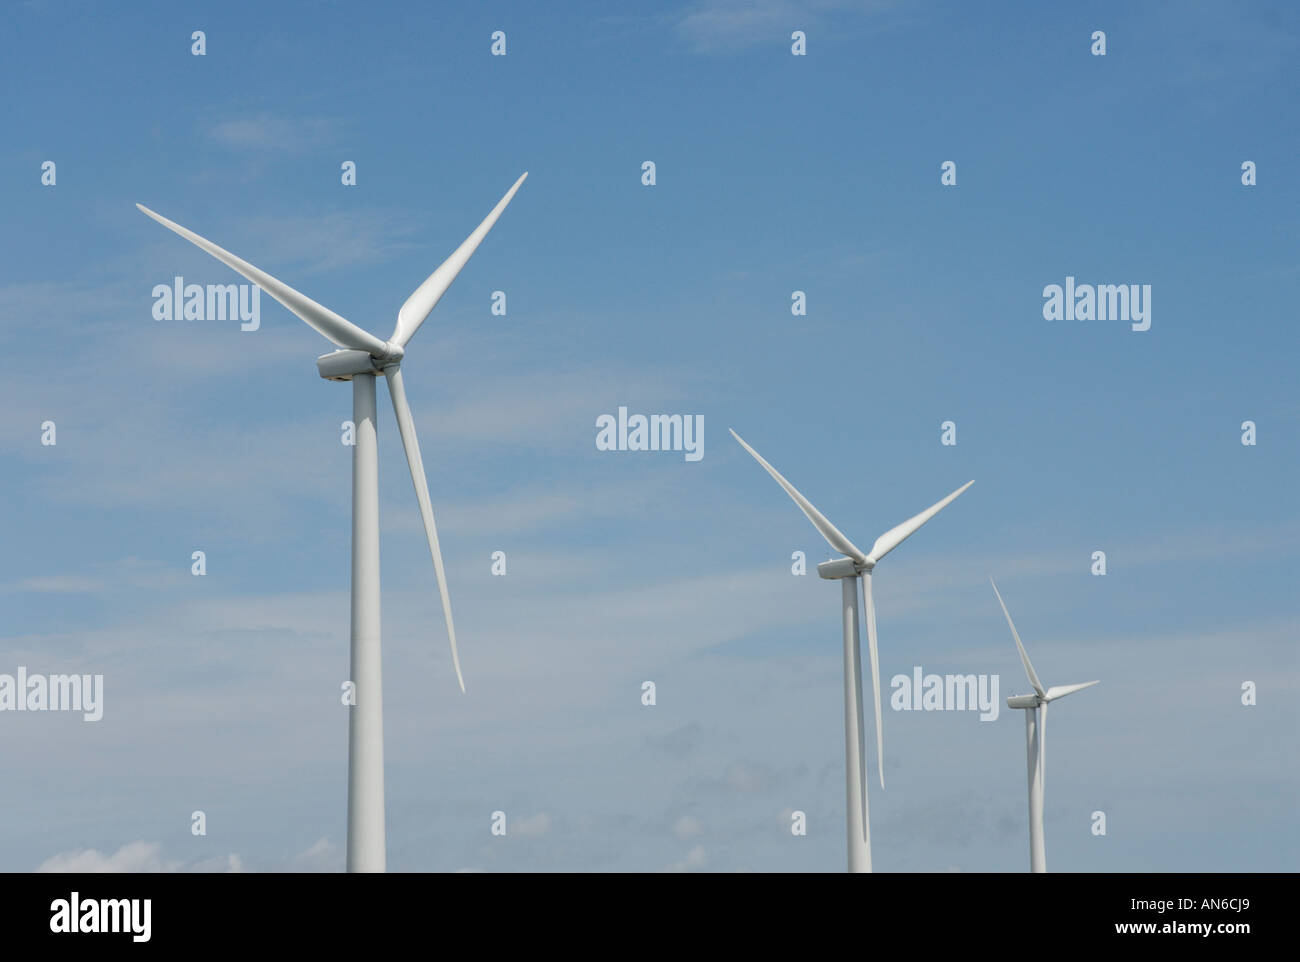 Drei Windkraftanlagen, close-up der klingen, gegen blauen Himmel. Windenergie macht "Windpark" Turbinen Alternativen, erneuerbaren Energie. Stockfoto